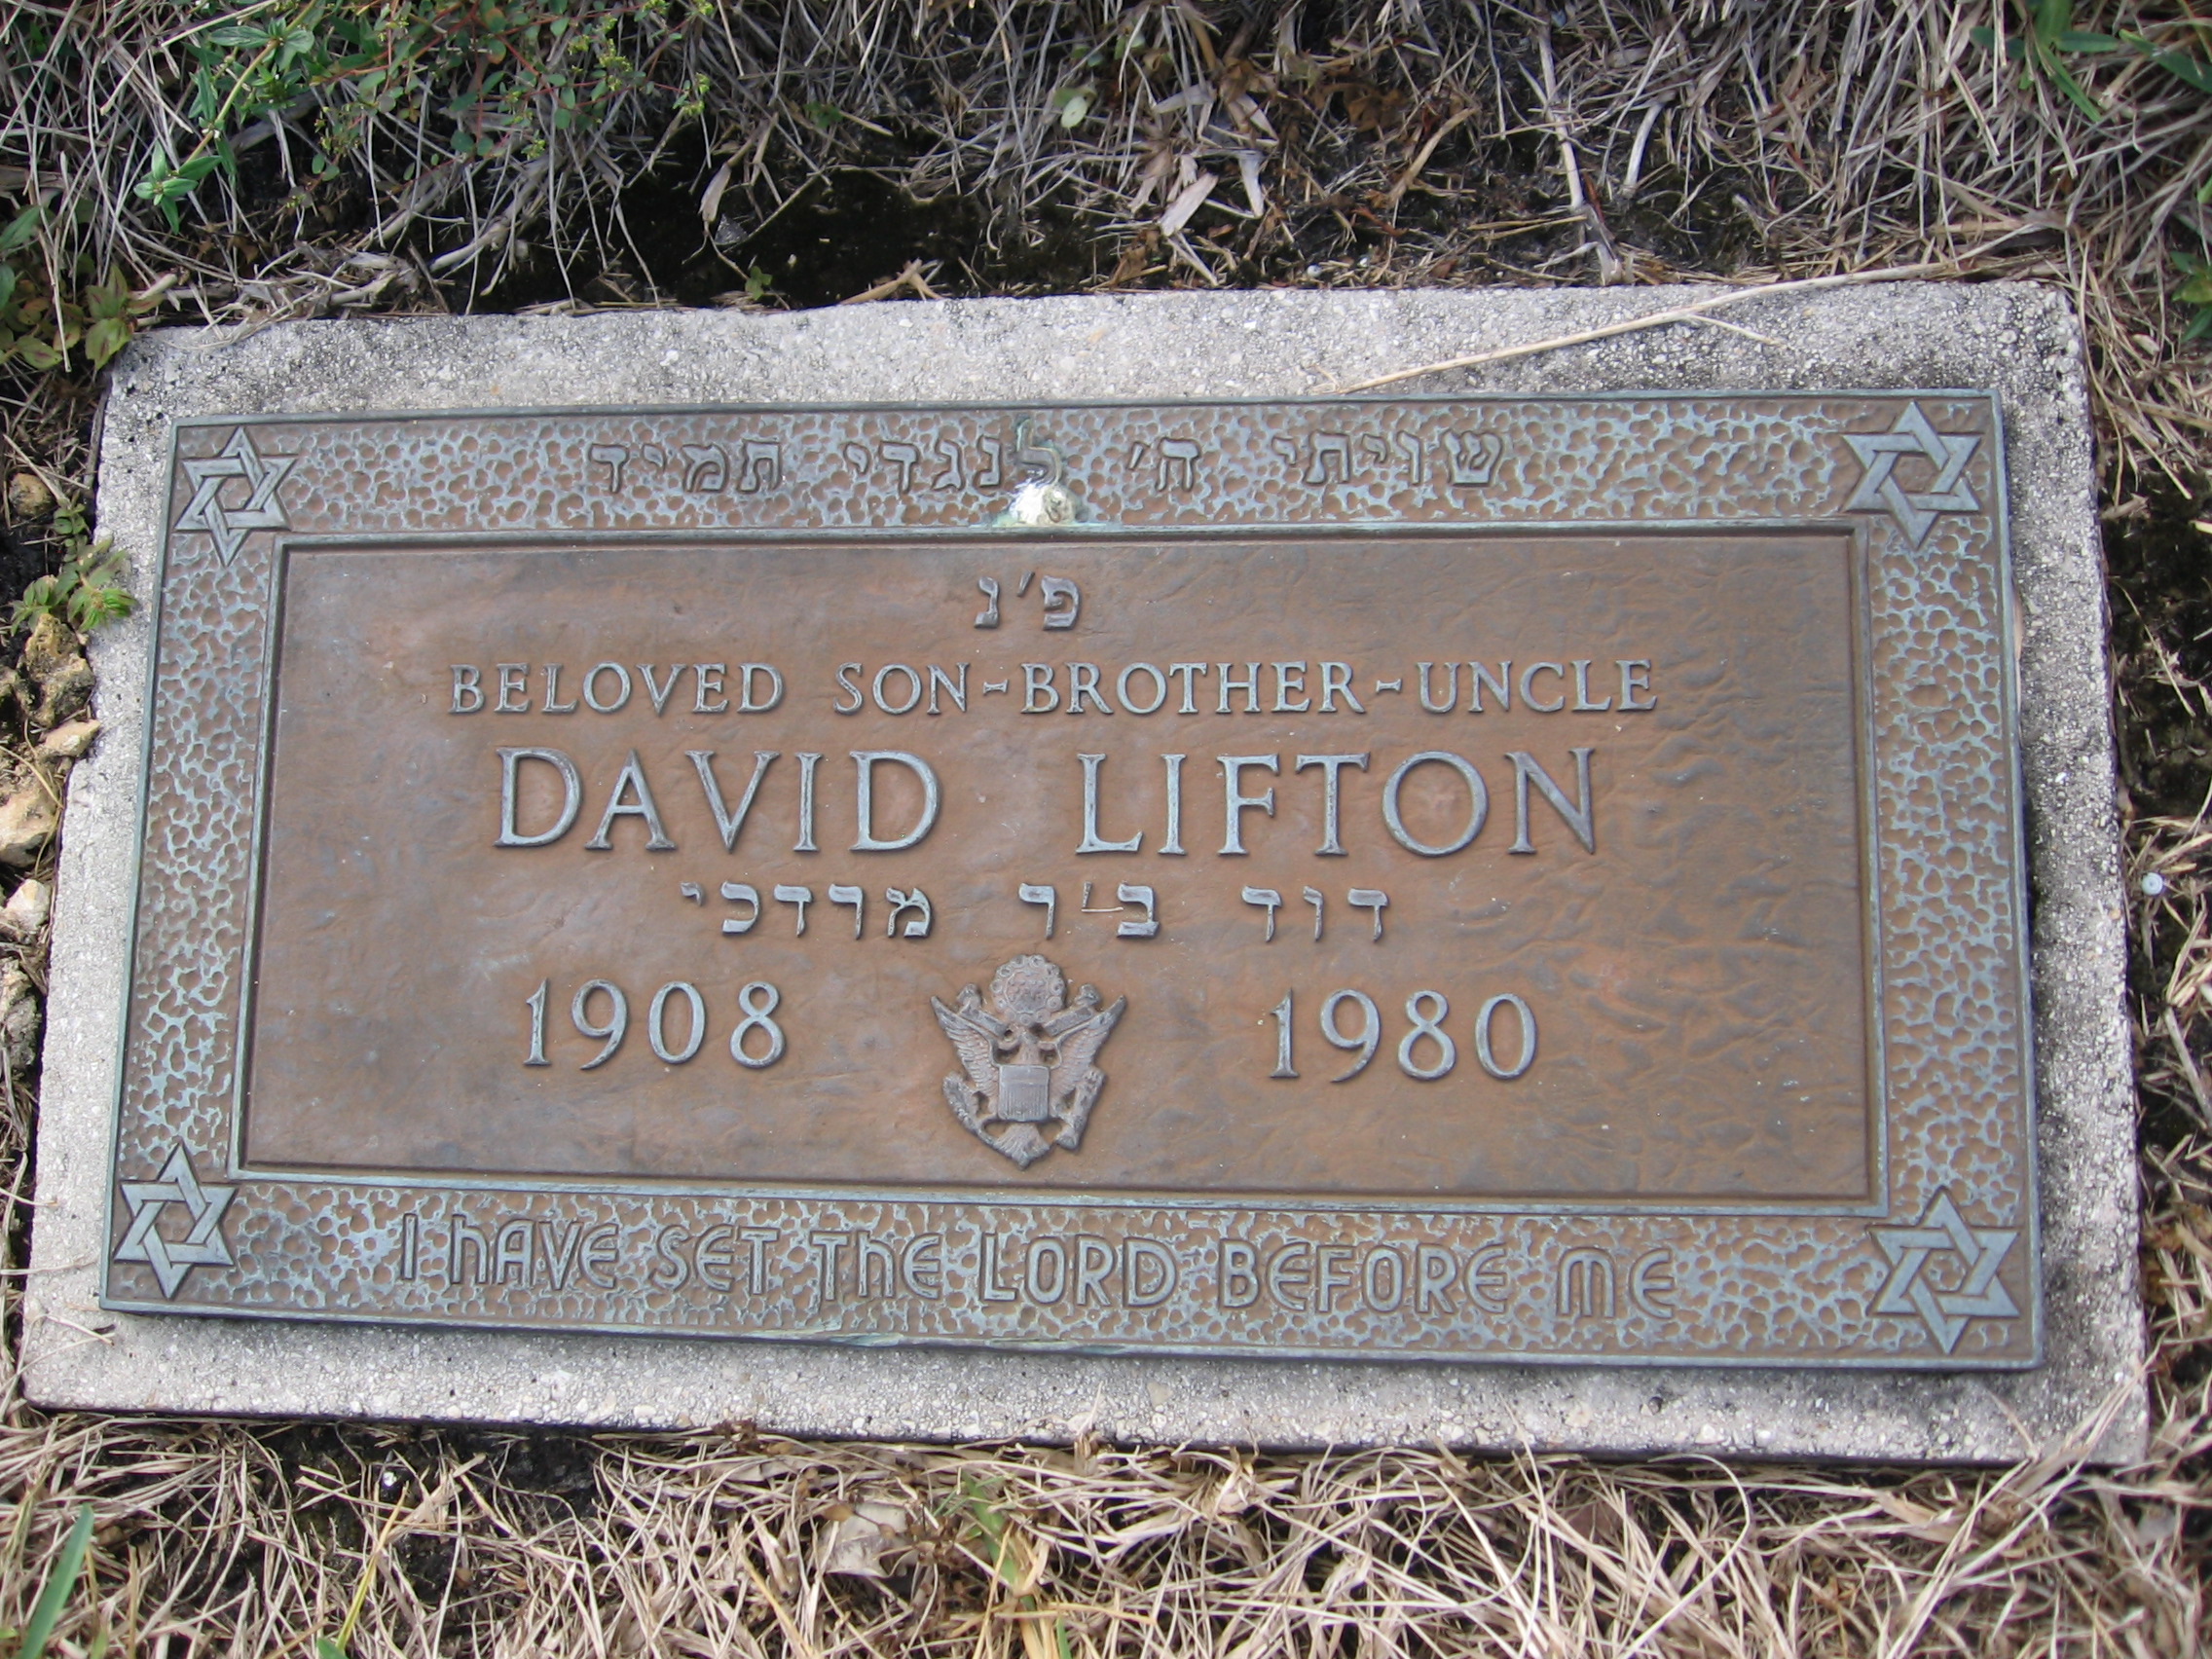 David Lifton